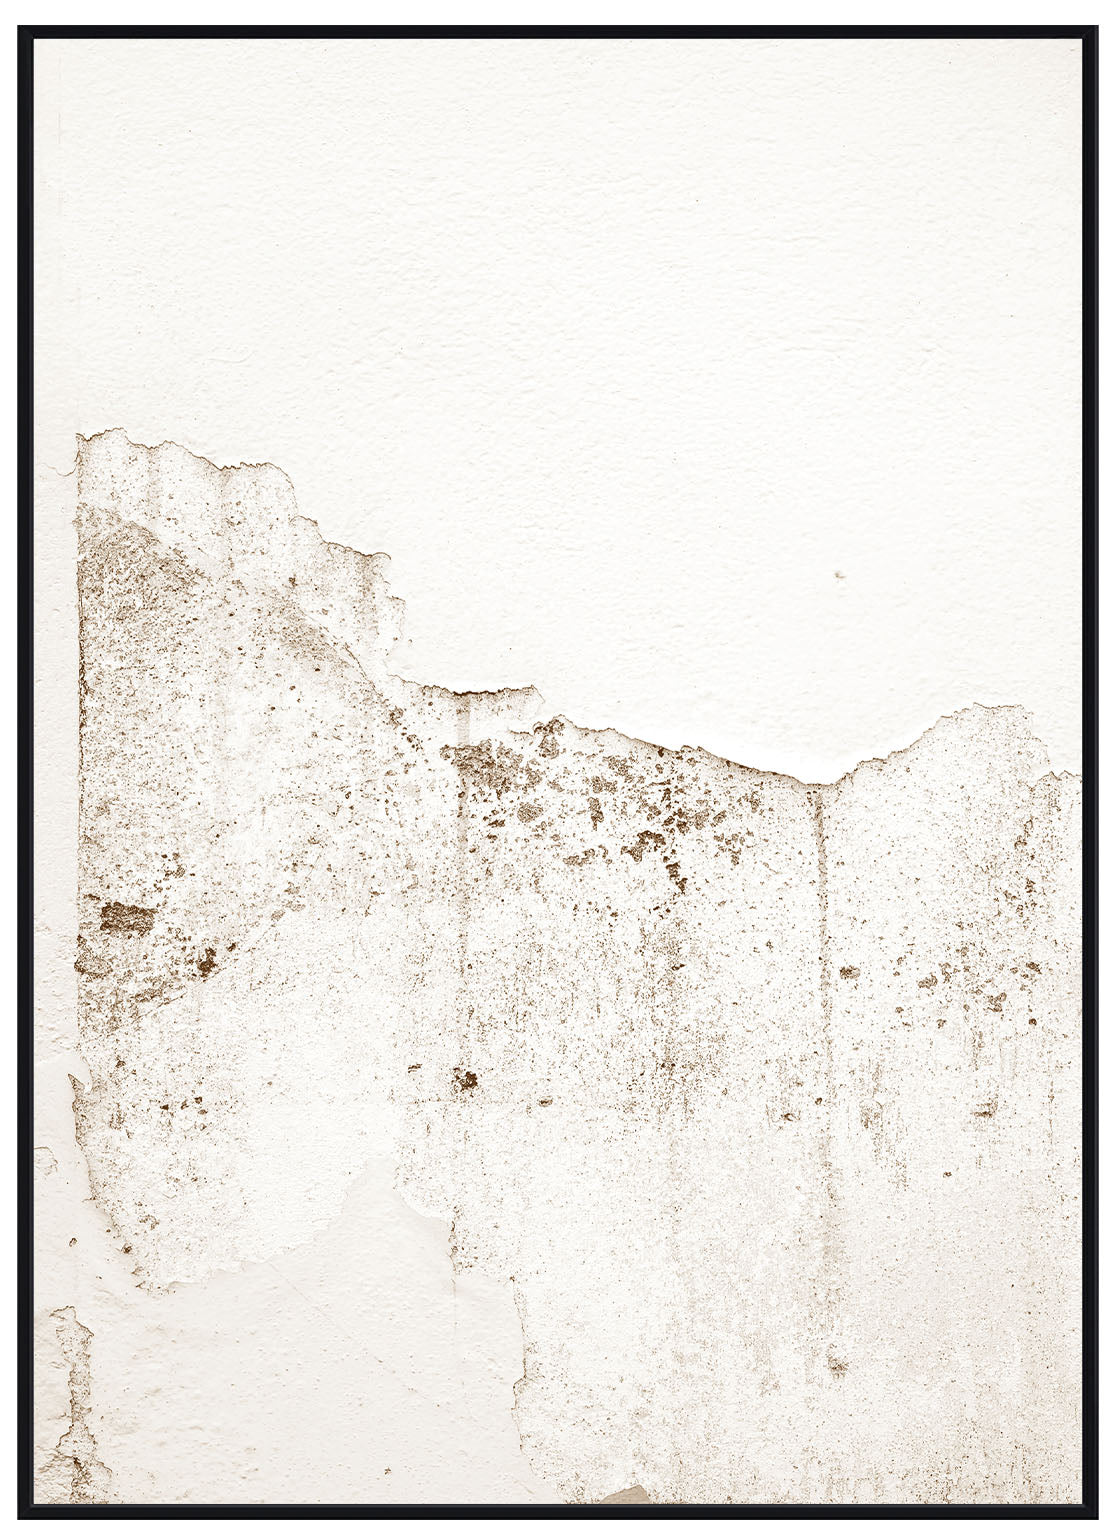 Abstract Wall No1